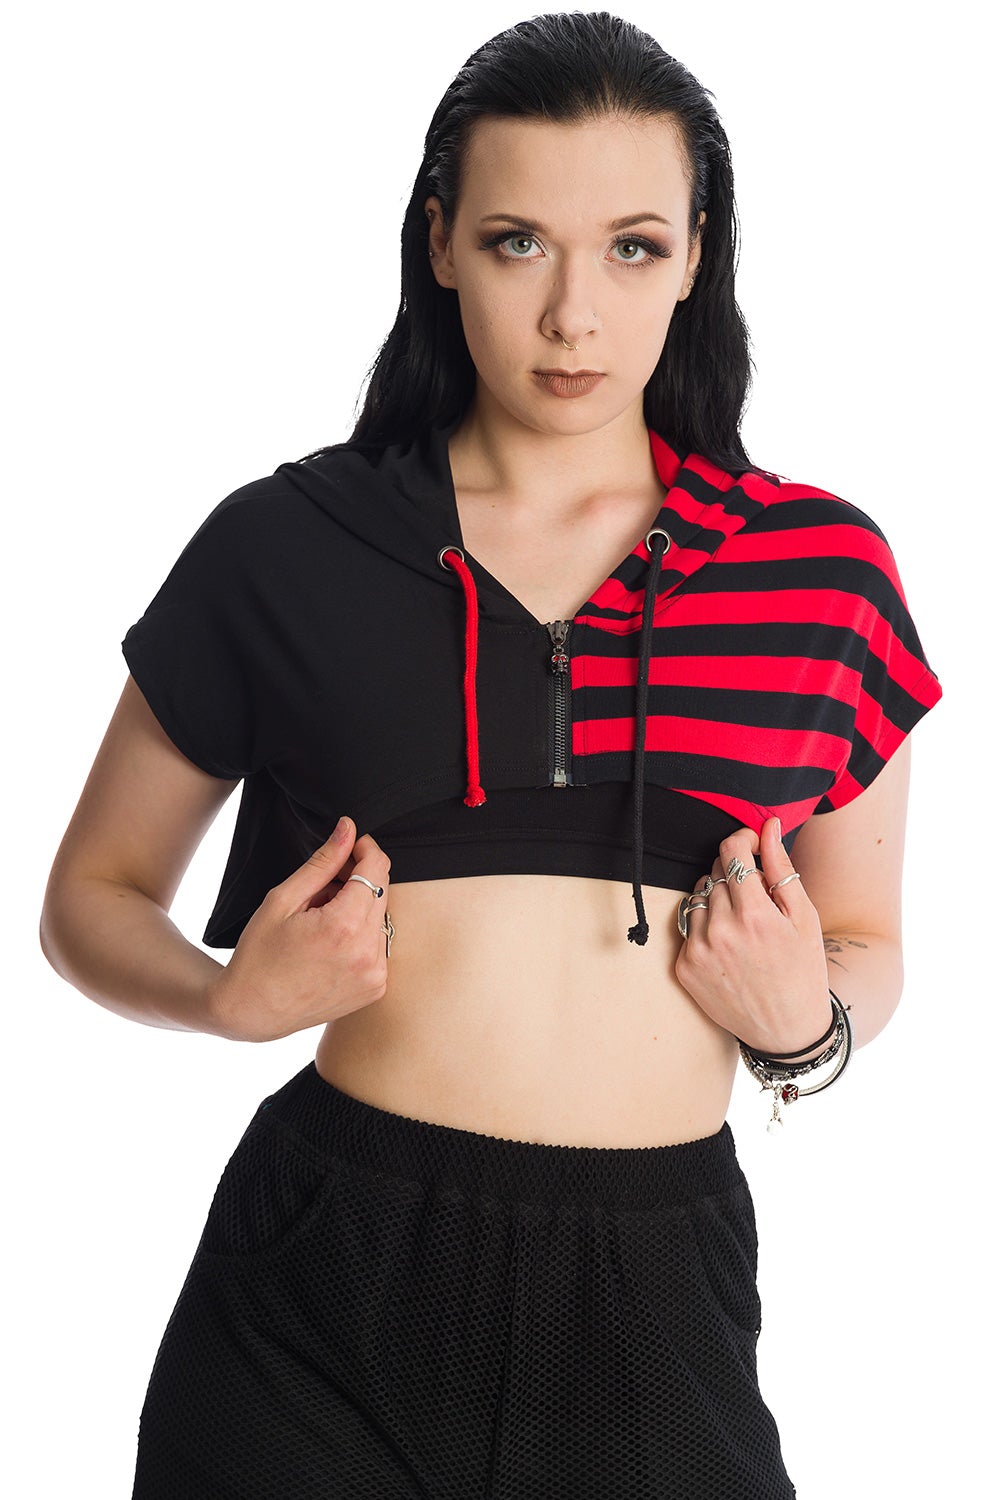 Alternative model in cropped half red strip and half black hoodie